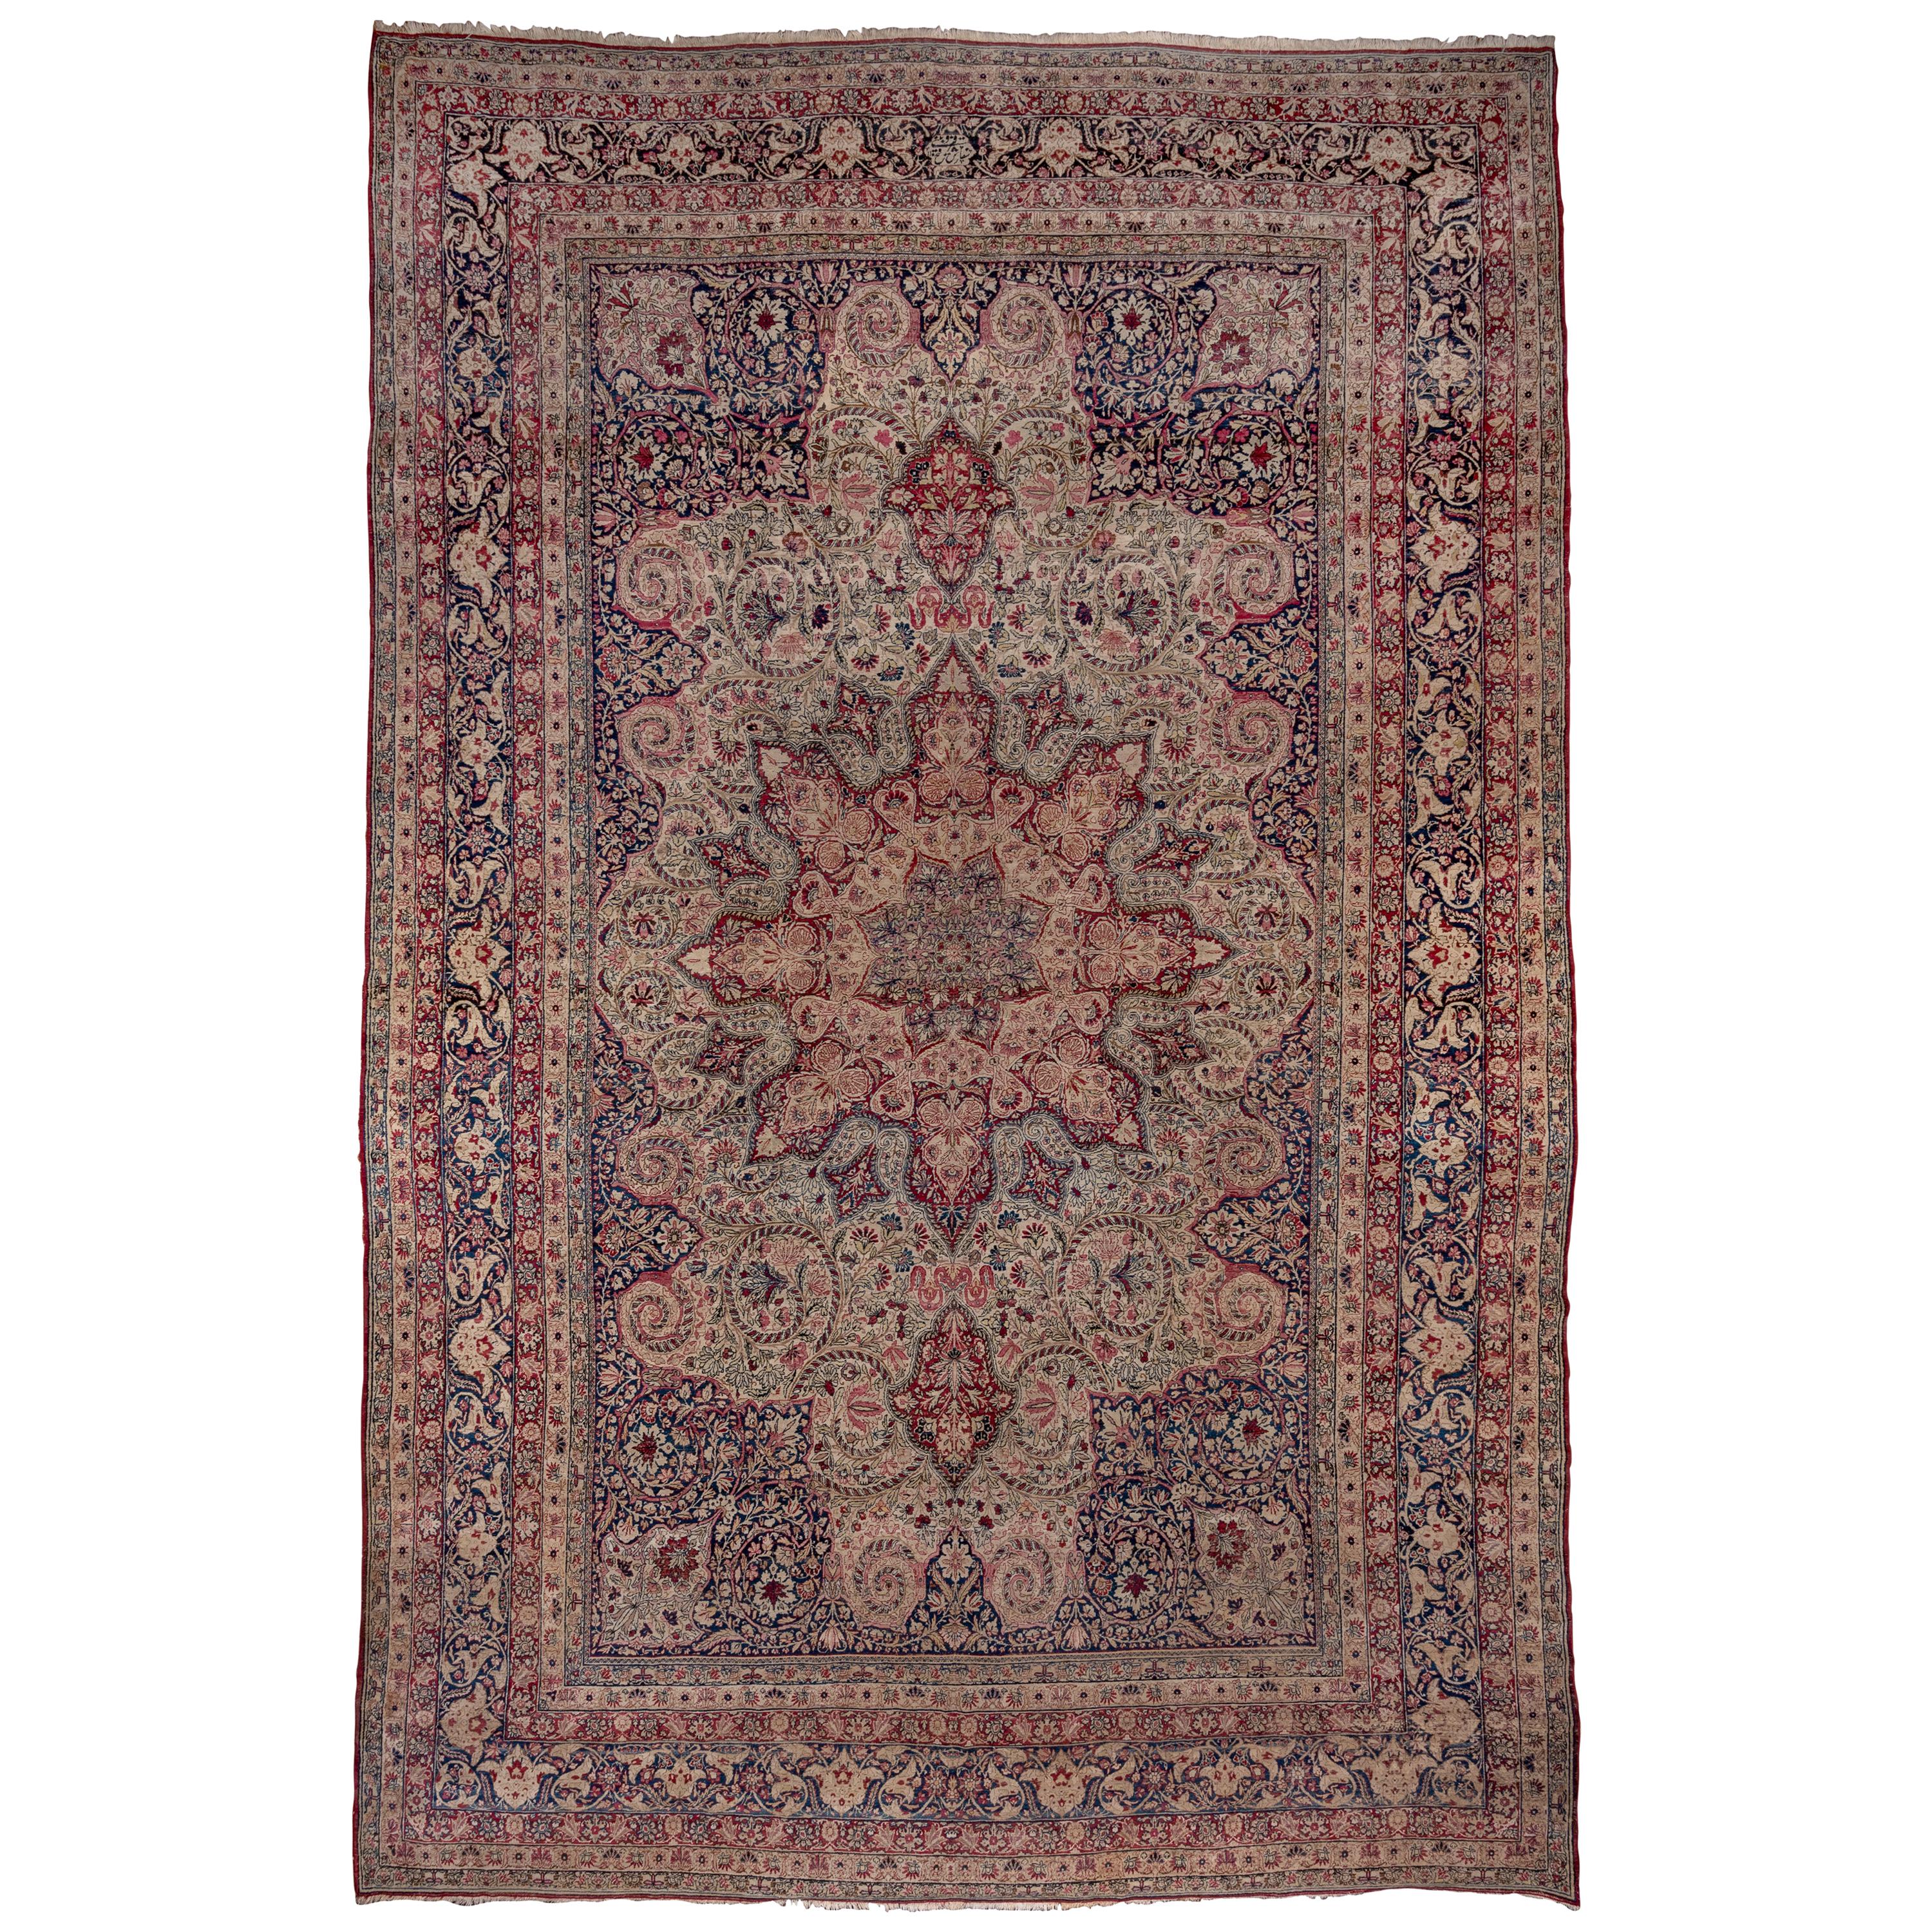 Antique Colorful Persian Lavar Kerman Carpet, Colorful Palette, Center Medallion